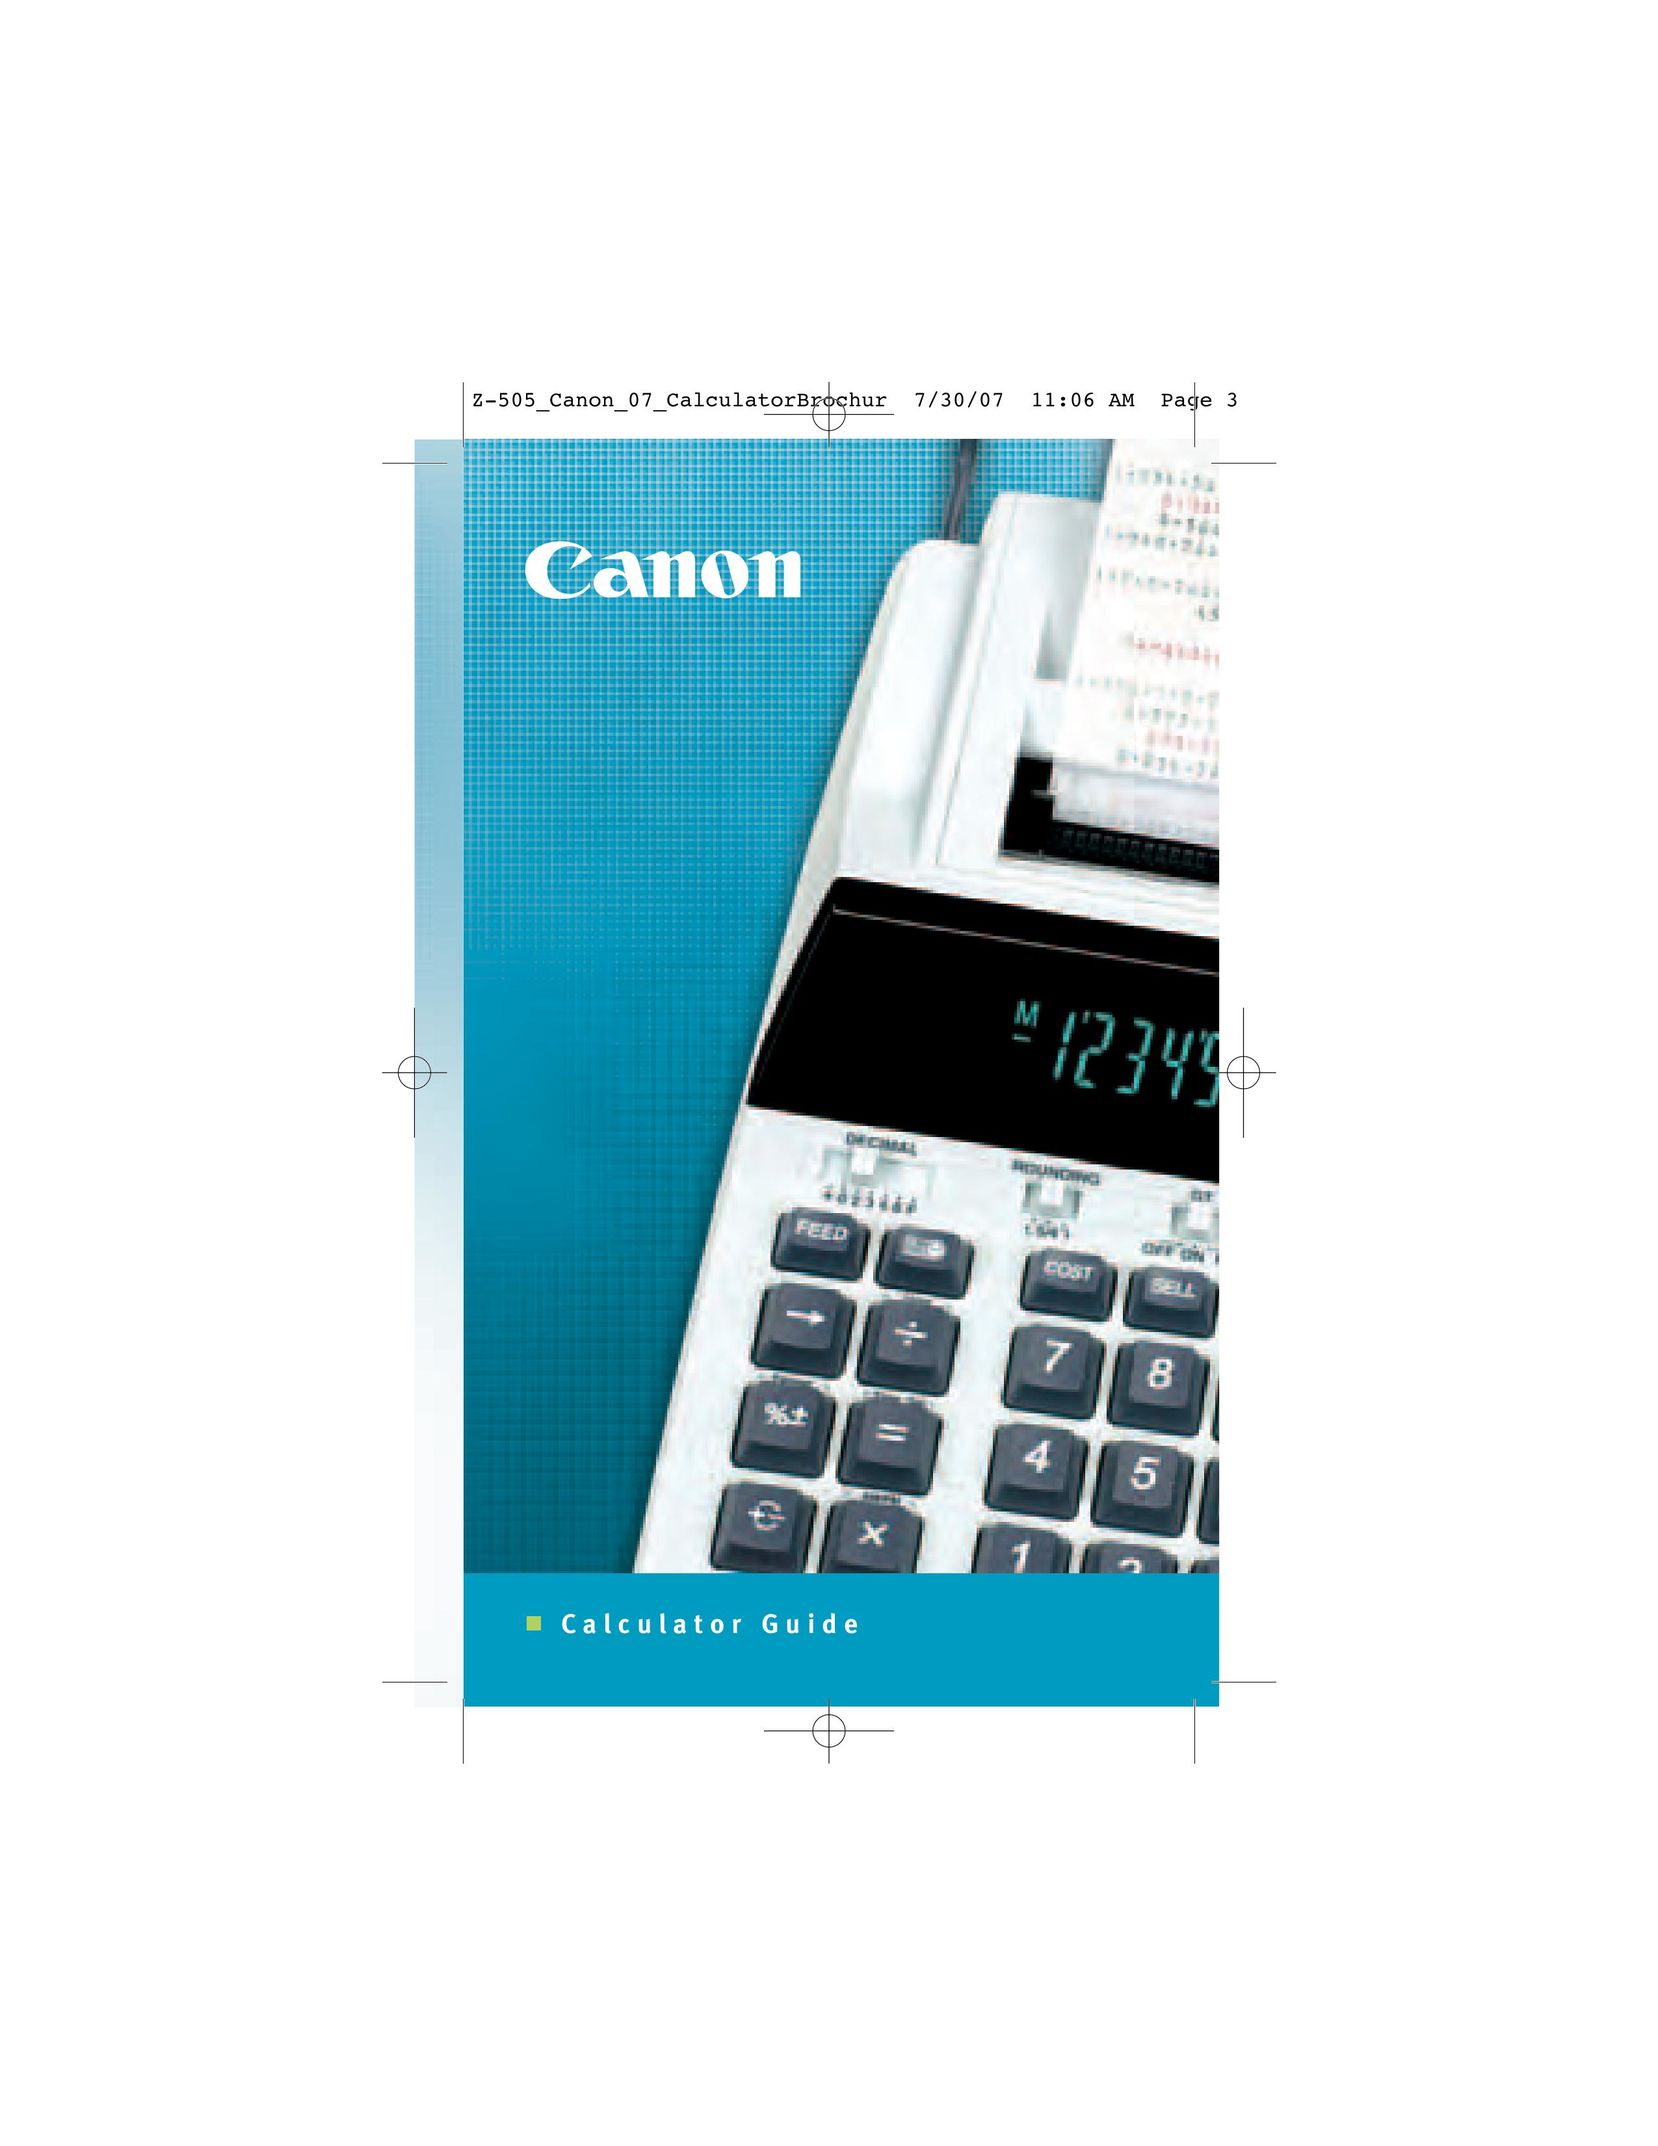 Canon F-604 Calculator User Manual